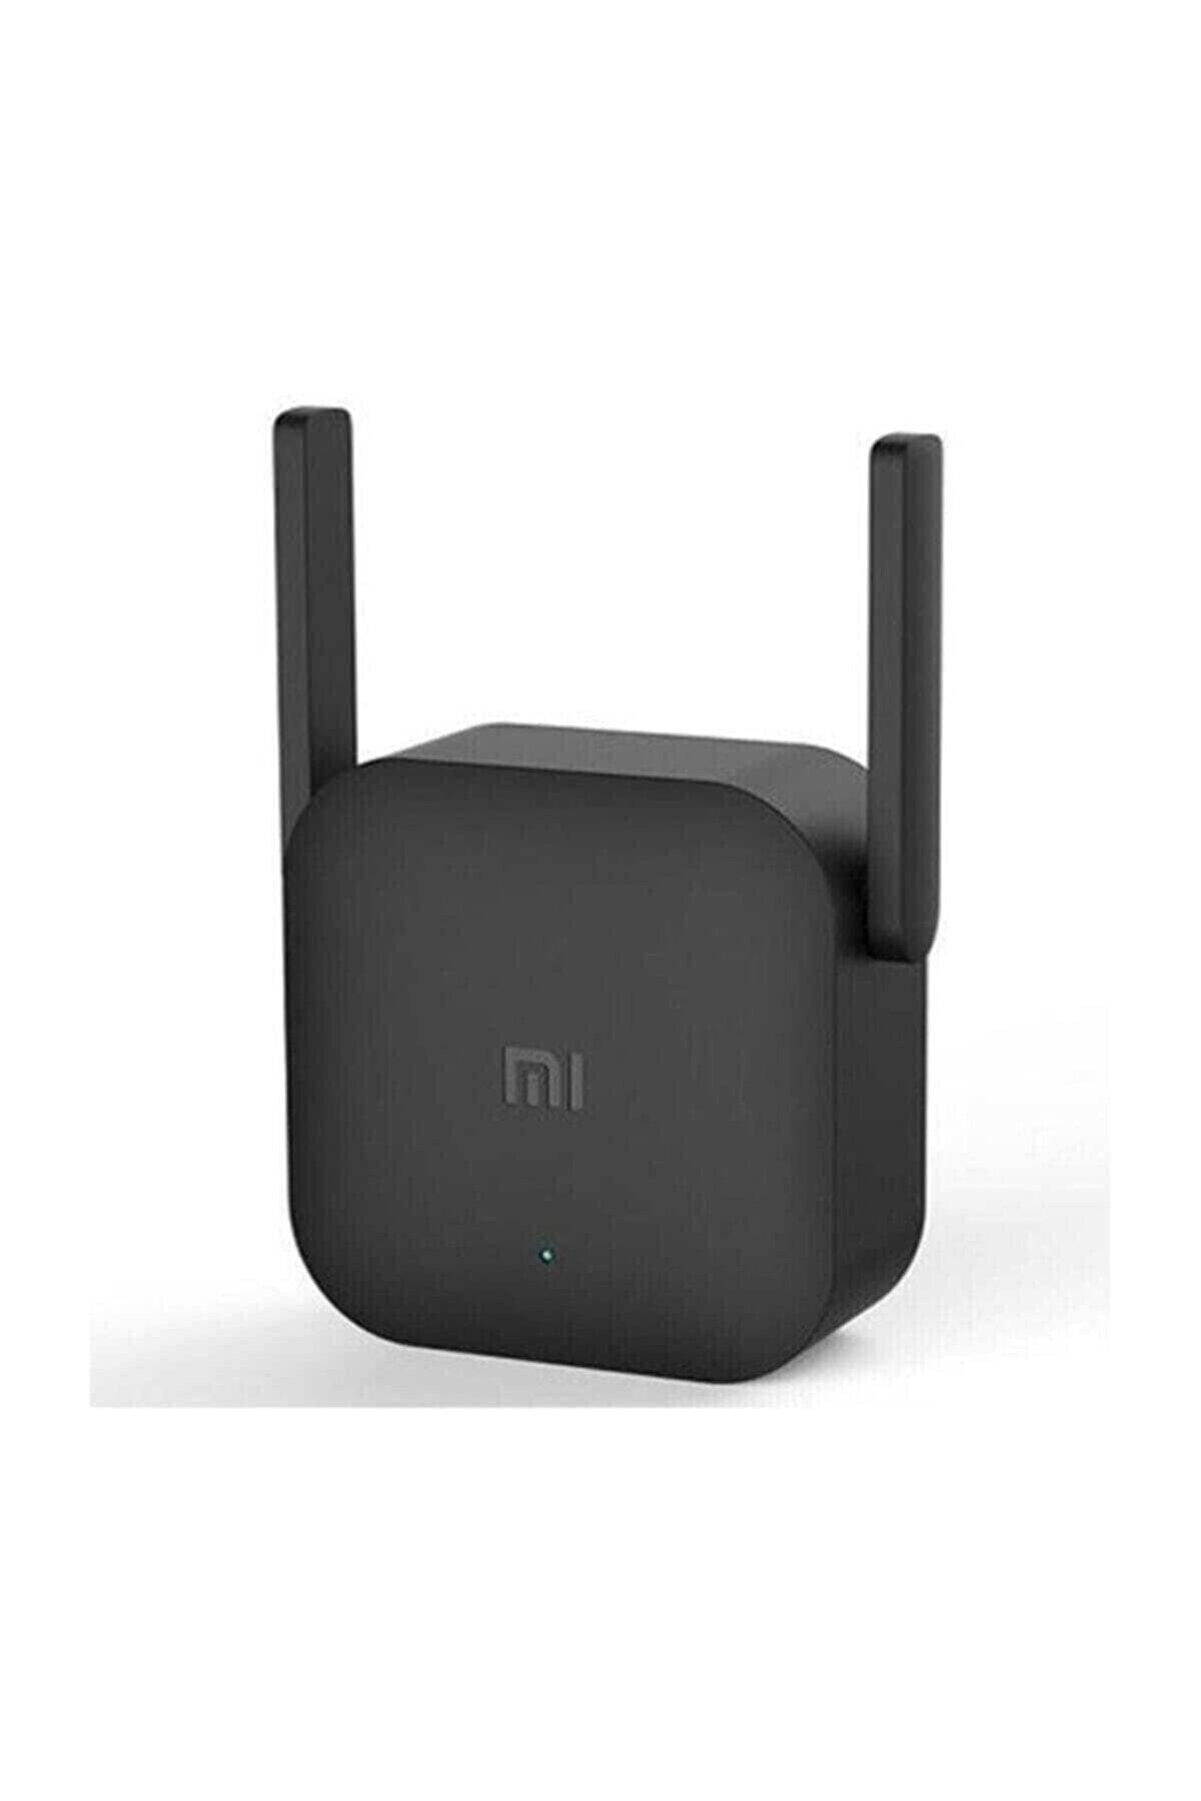 MI Wifi Pro Sinyal Yakınlaştırıcı - Sinyal Güçlendirici - Xiaomi Türkiye Garantili